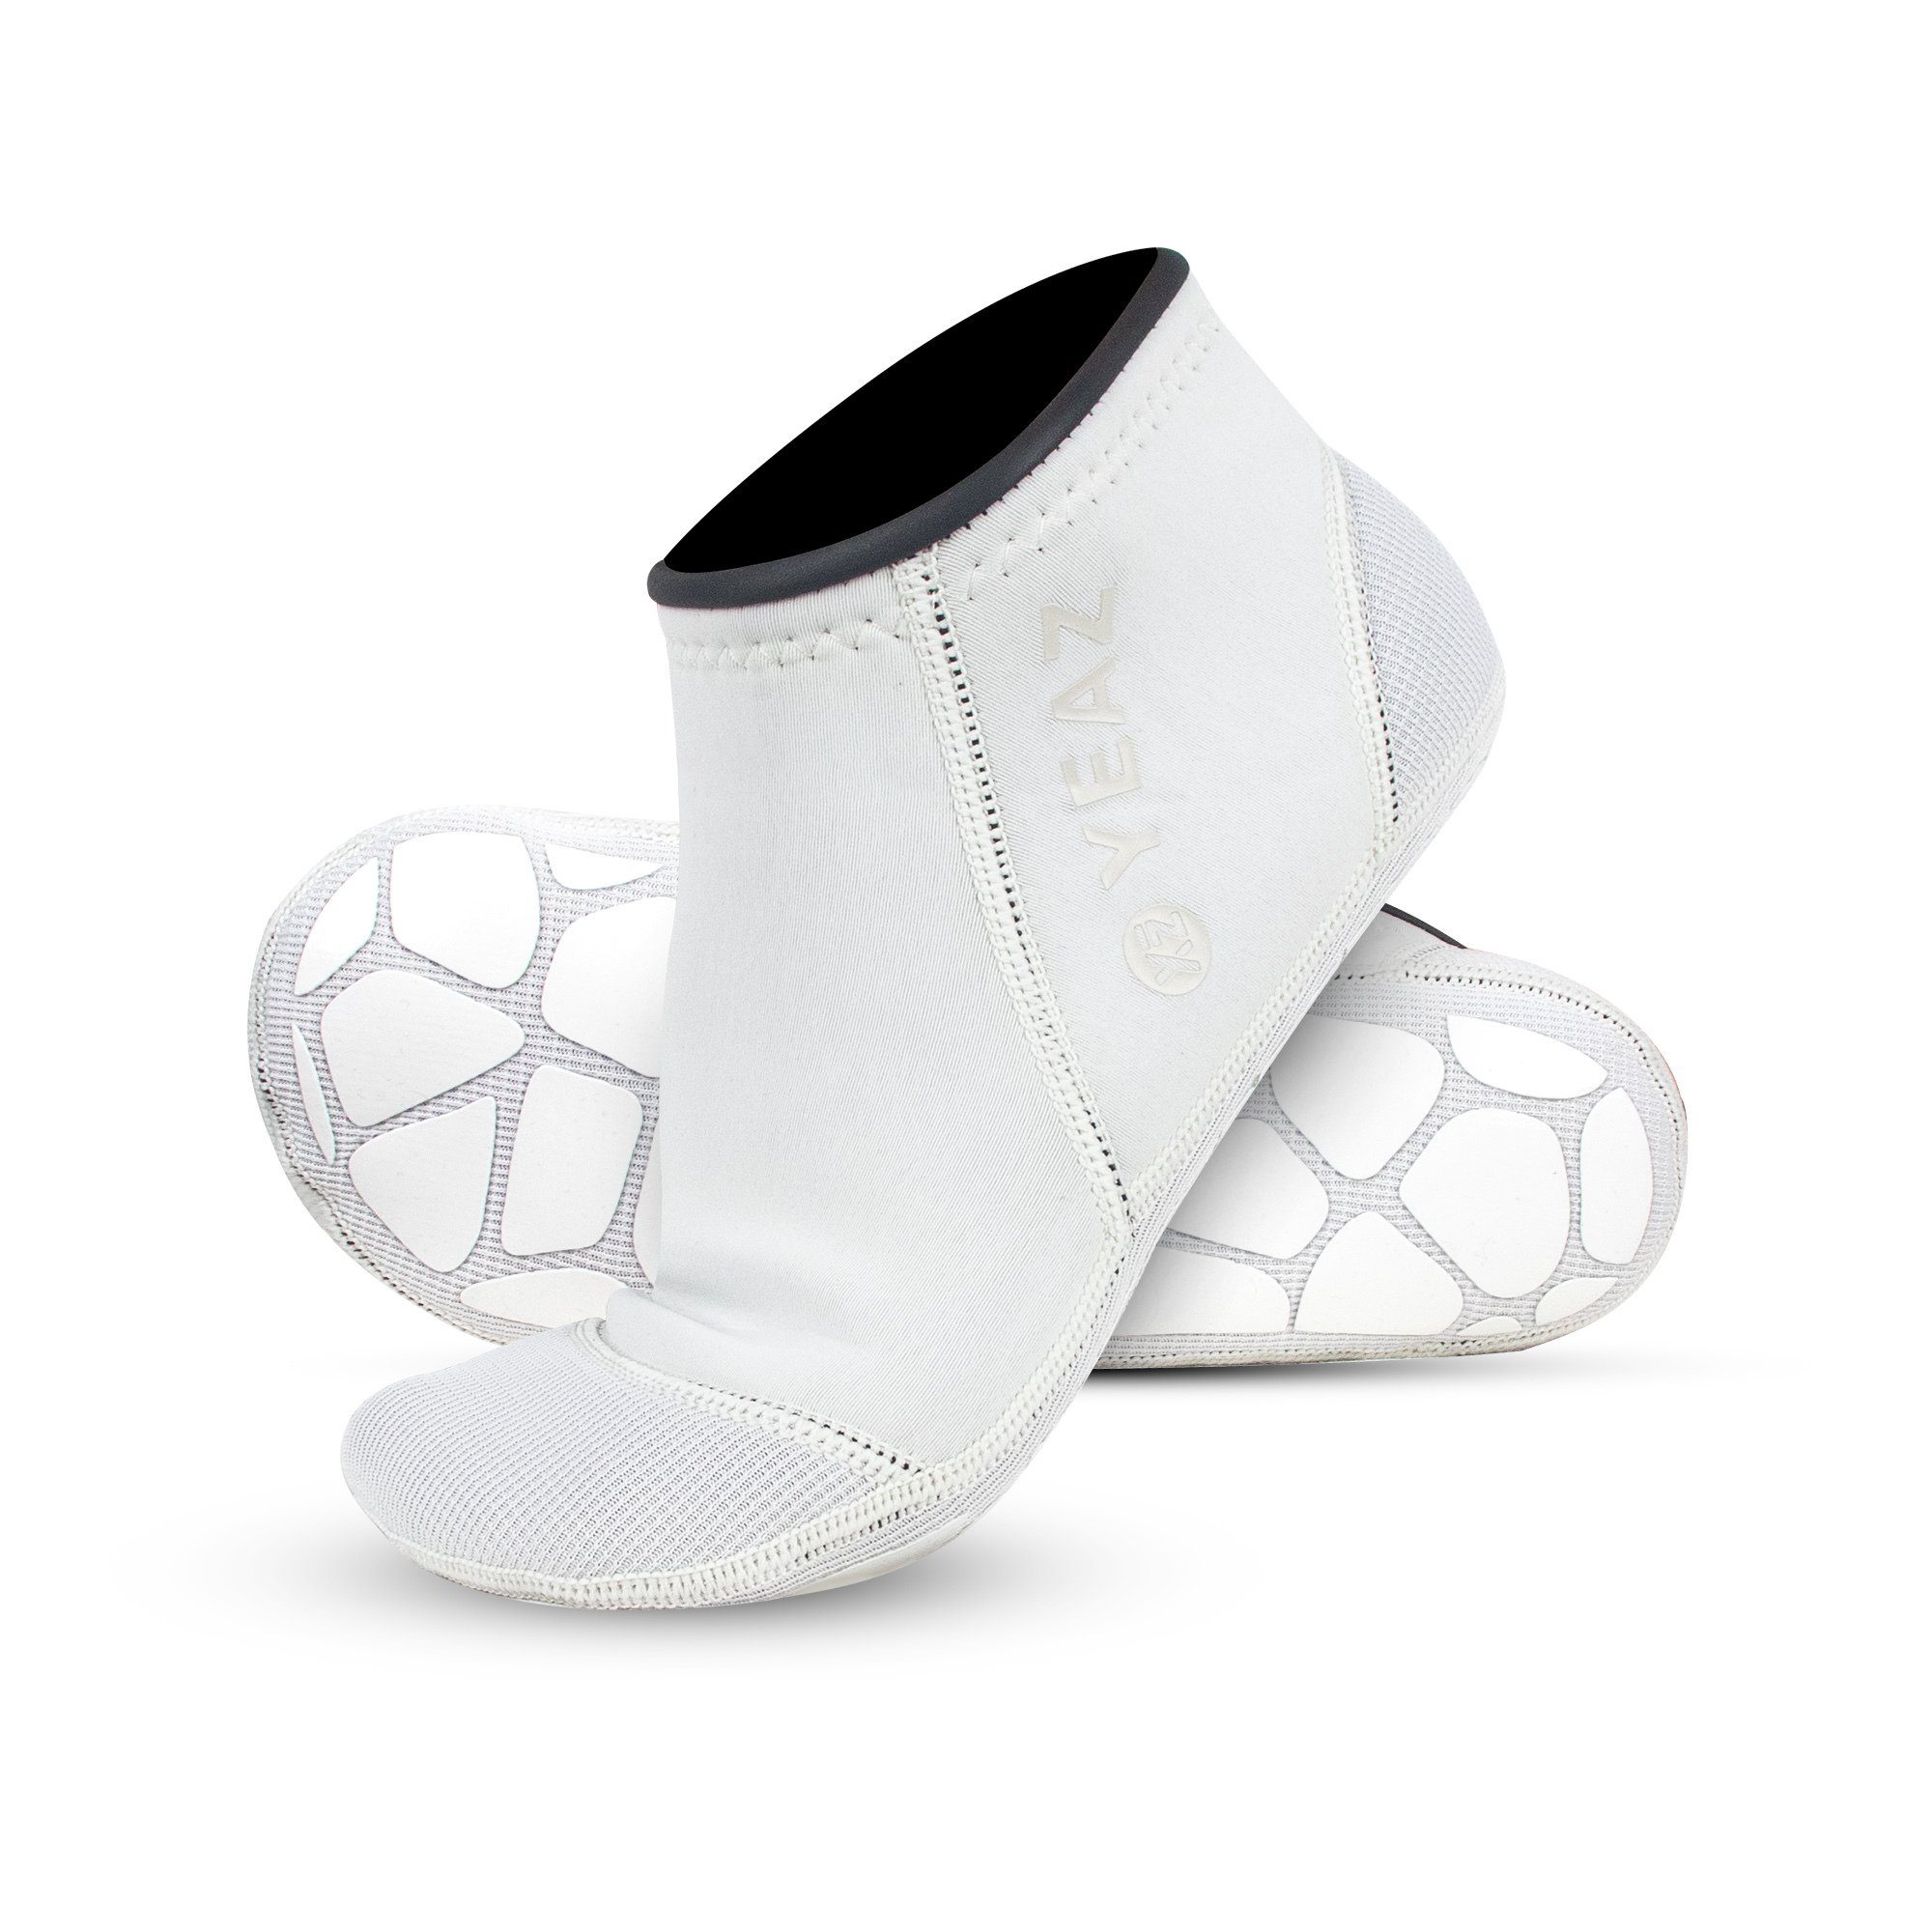 YEAZ Неопренові шкарпетки NEOSOCK LOW PRO neoprensocken Ideal für Wassersport / Outdoor-Aktivitäten